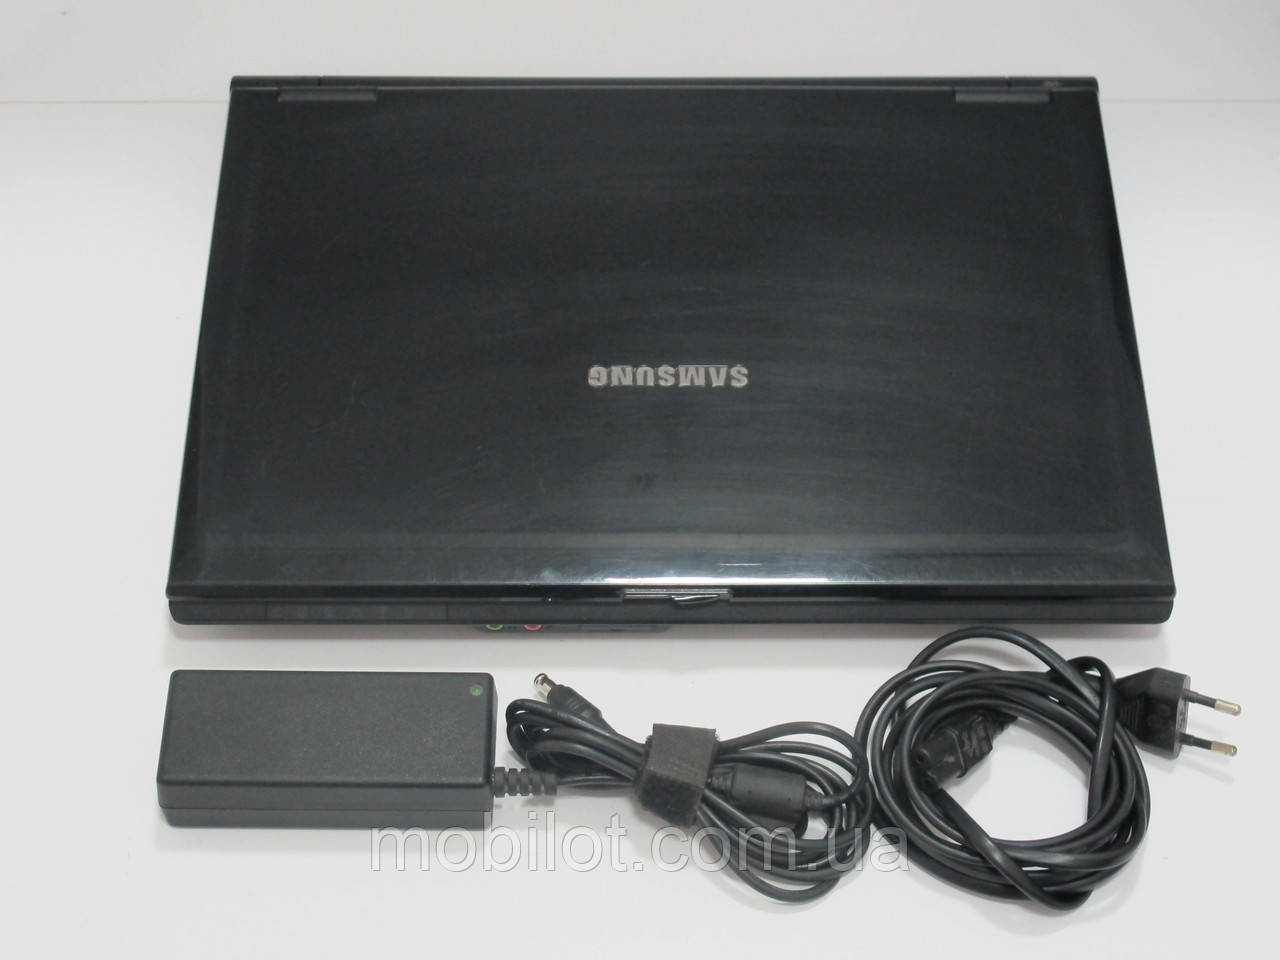 Ноутбук Samsung R20 (NR-6491)Нет в наличии